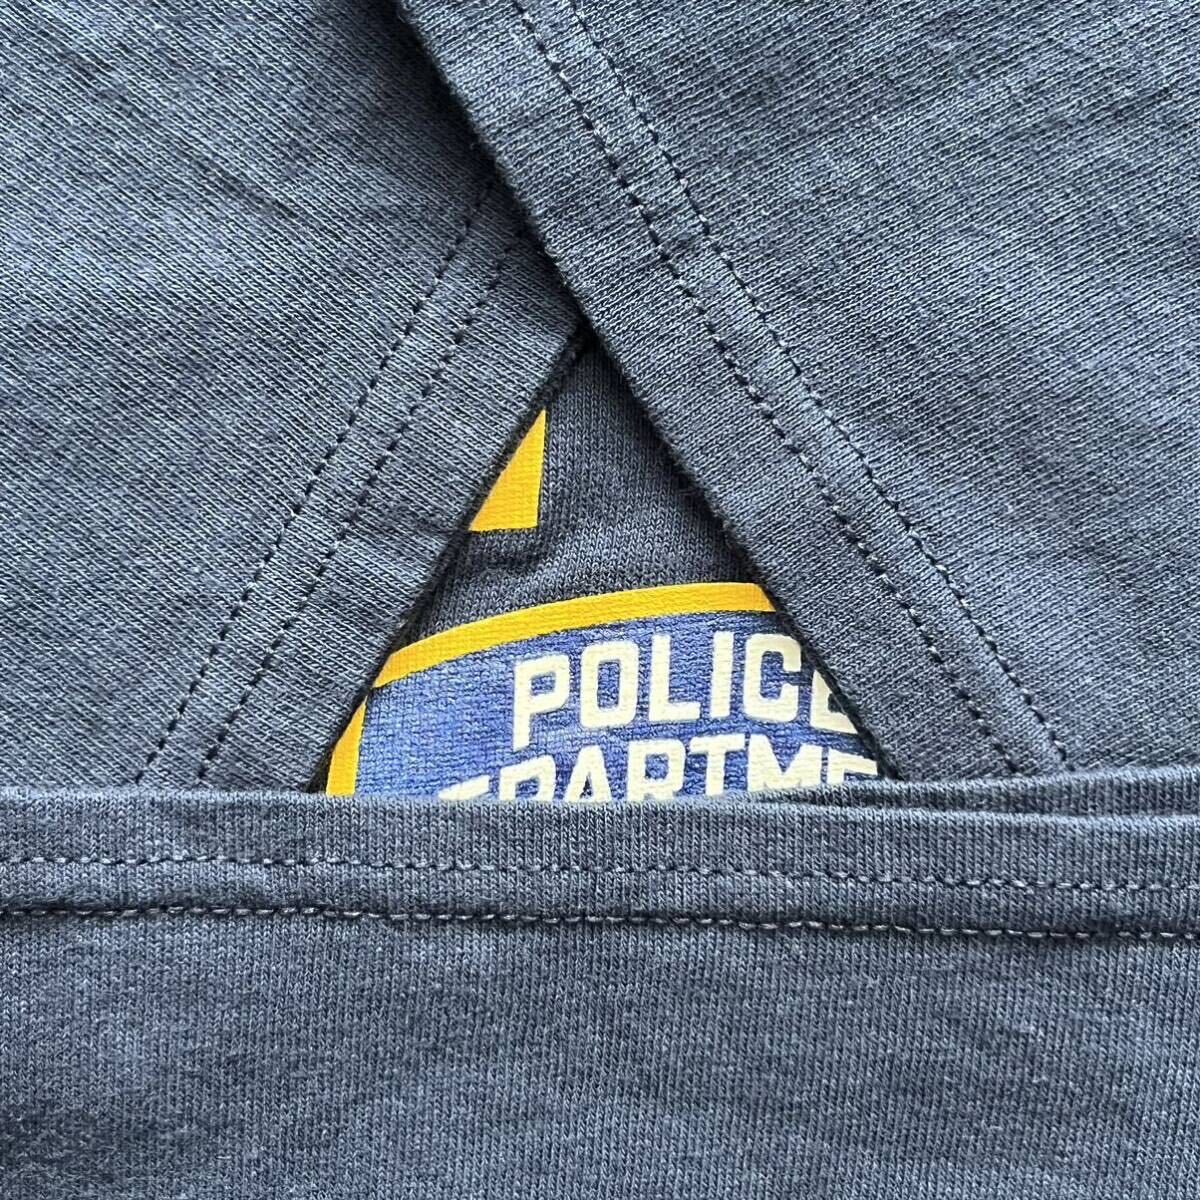 NYPD メンズ 半袖Tシャツ フロント イエロー プリント 古着 アメカジ Mサイズ 綿 コットン 送料込 US古着の画像8